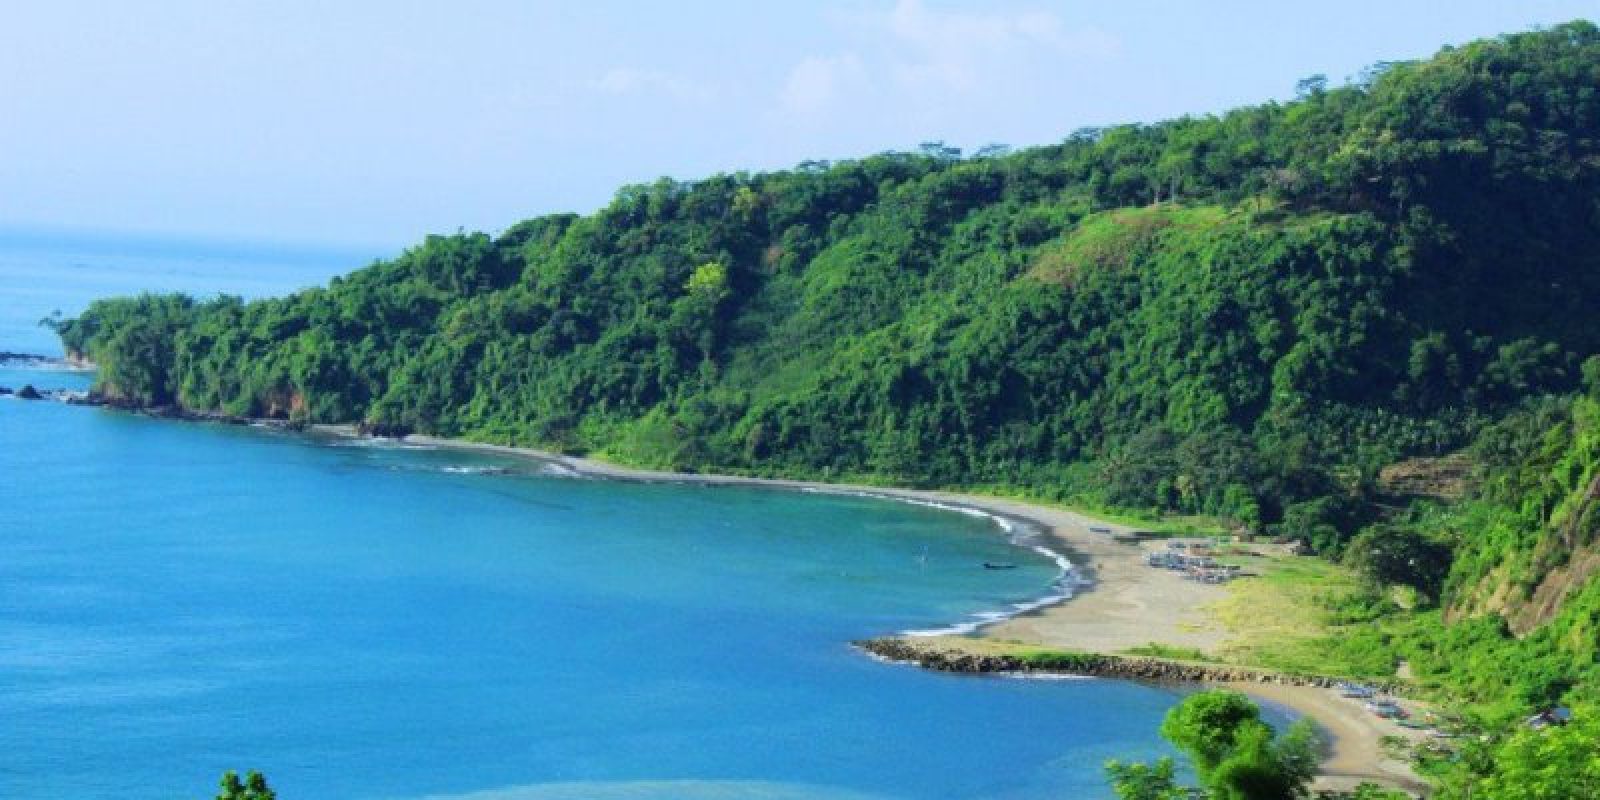 20 Pantai Pasir Putih Terindah Di Indonesia Yang Wajib Dikunjungi